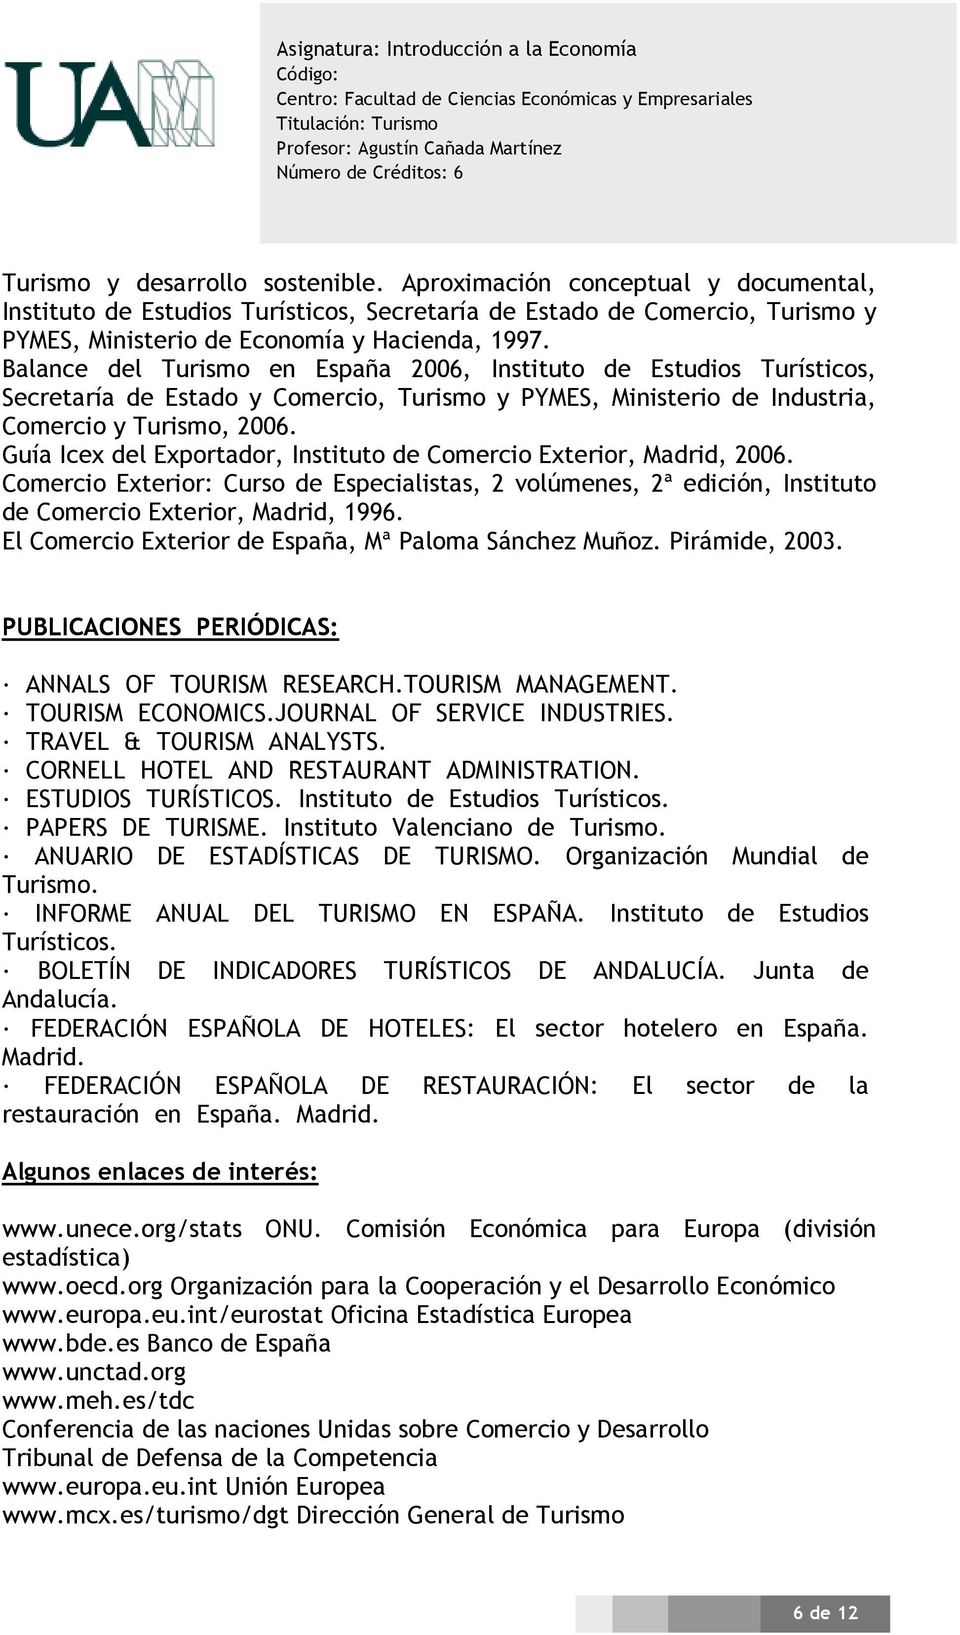 Guía Icex del Exportador, Instituto de Comercio Exterior, Madrid, 2006. Comercio Exterior: Curso de Especialistas, 2 volúmenes, 2ª edición, Instituto de Comercio Exterior, Madrid, 1996.